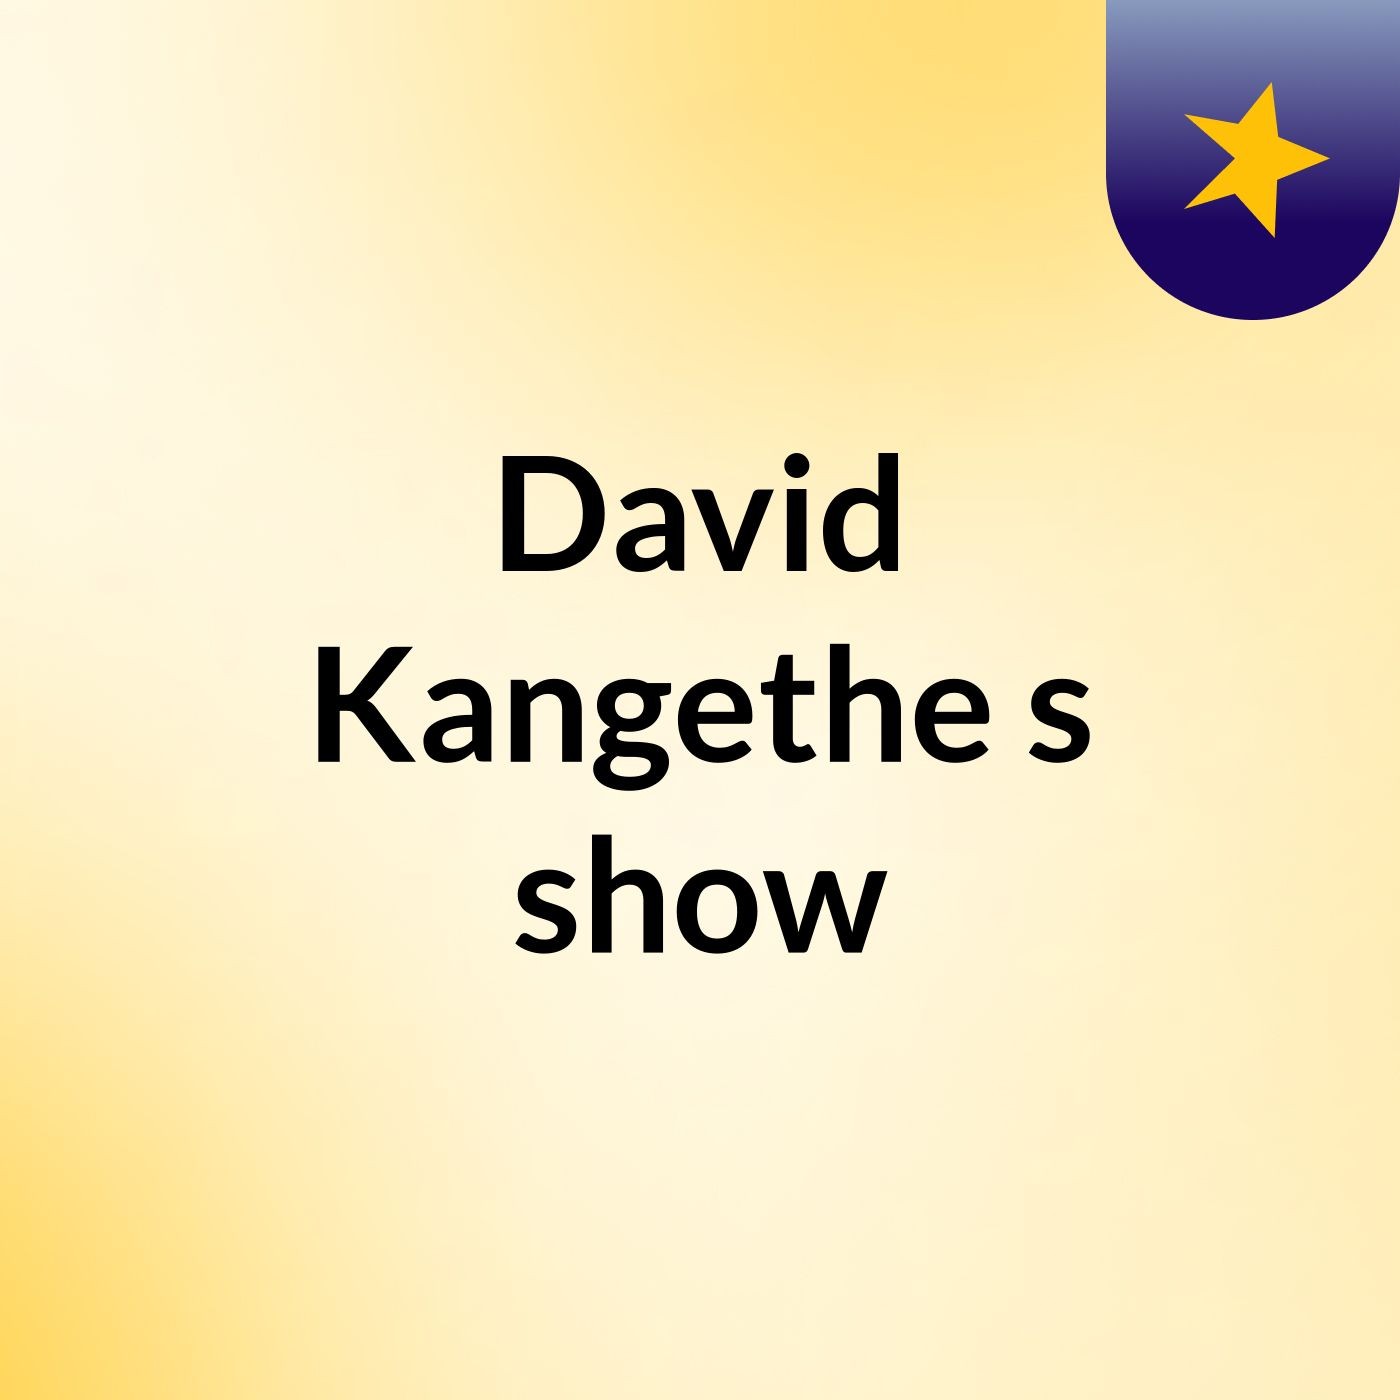 David Kangethe's show